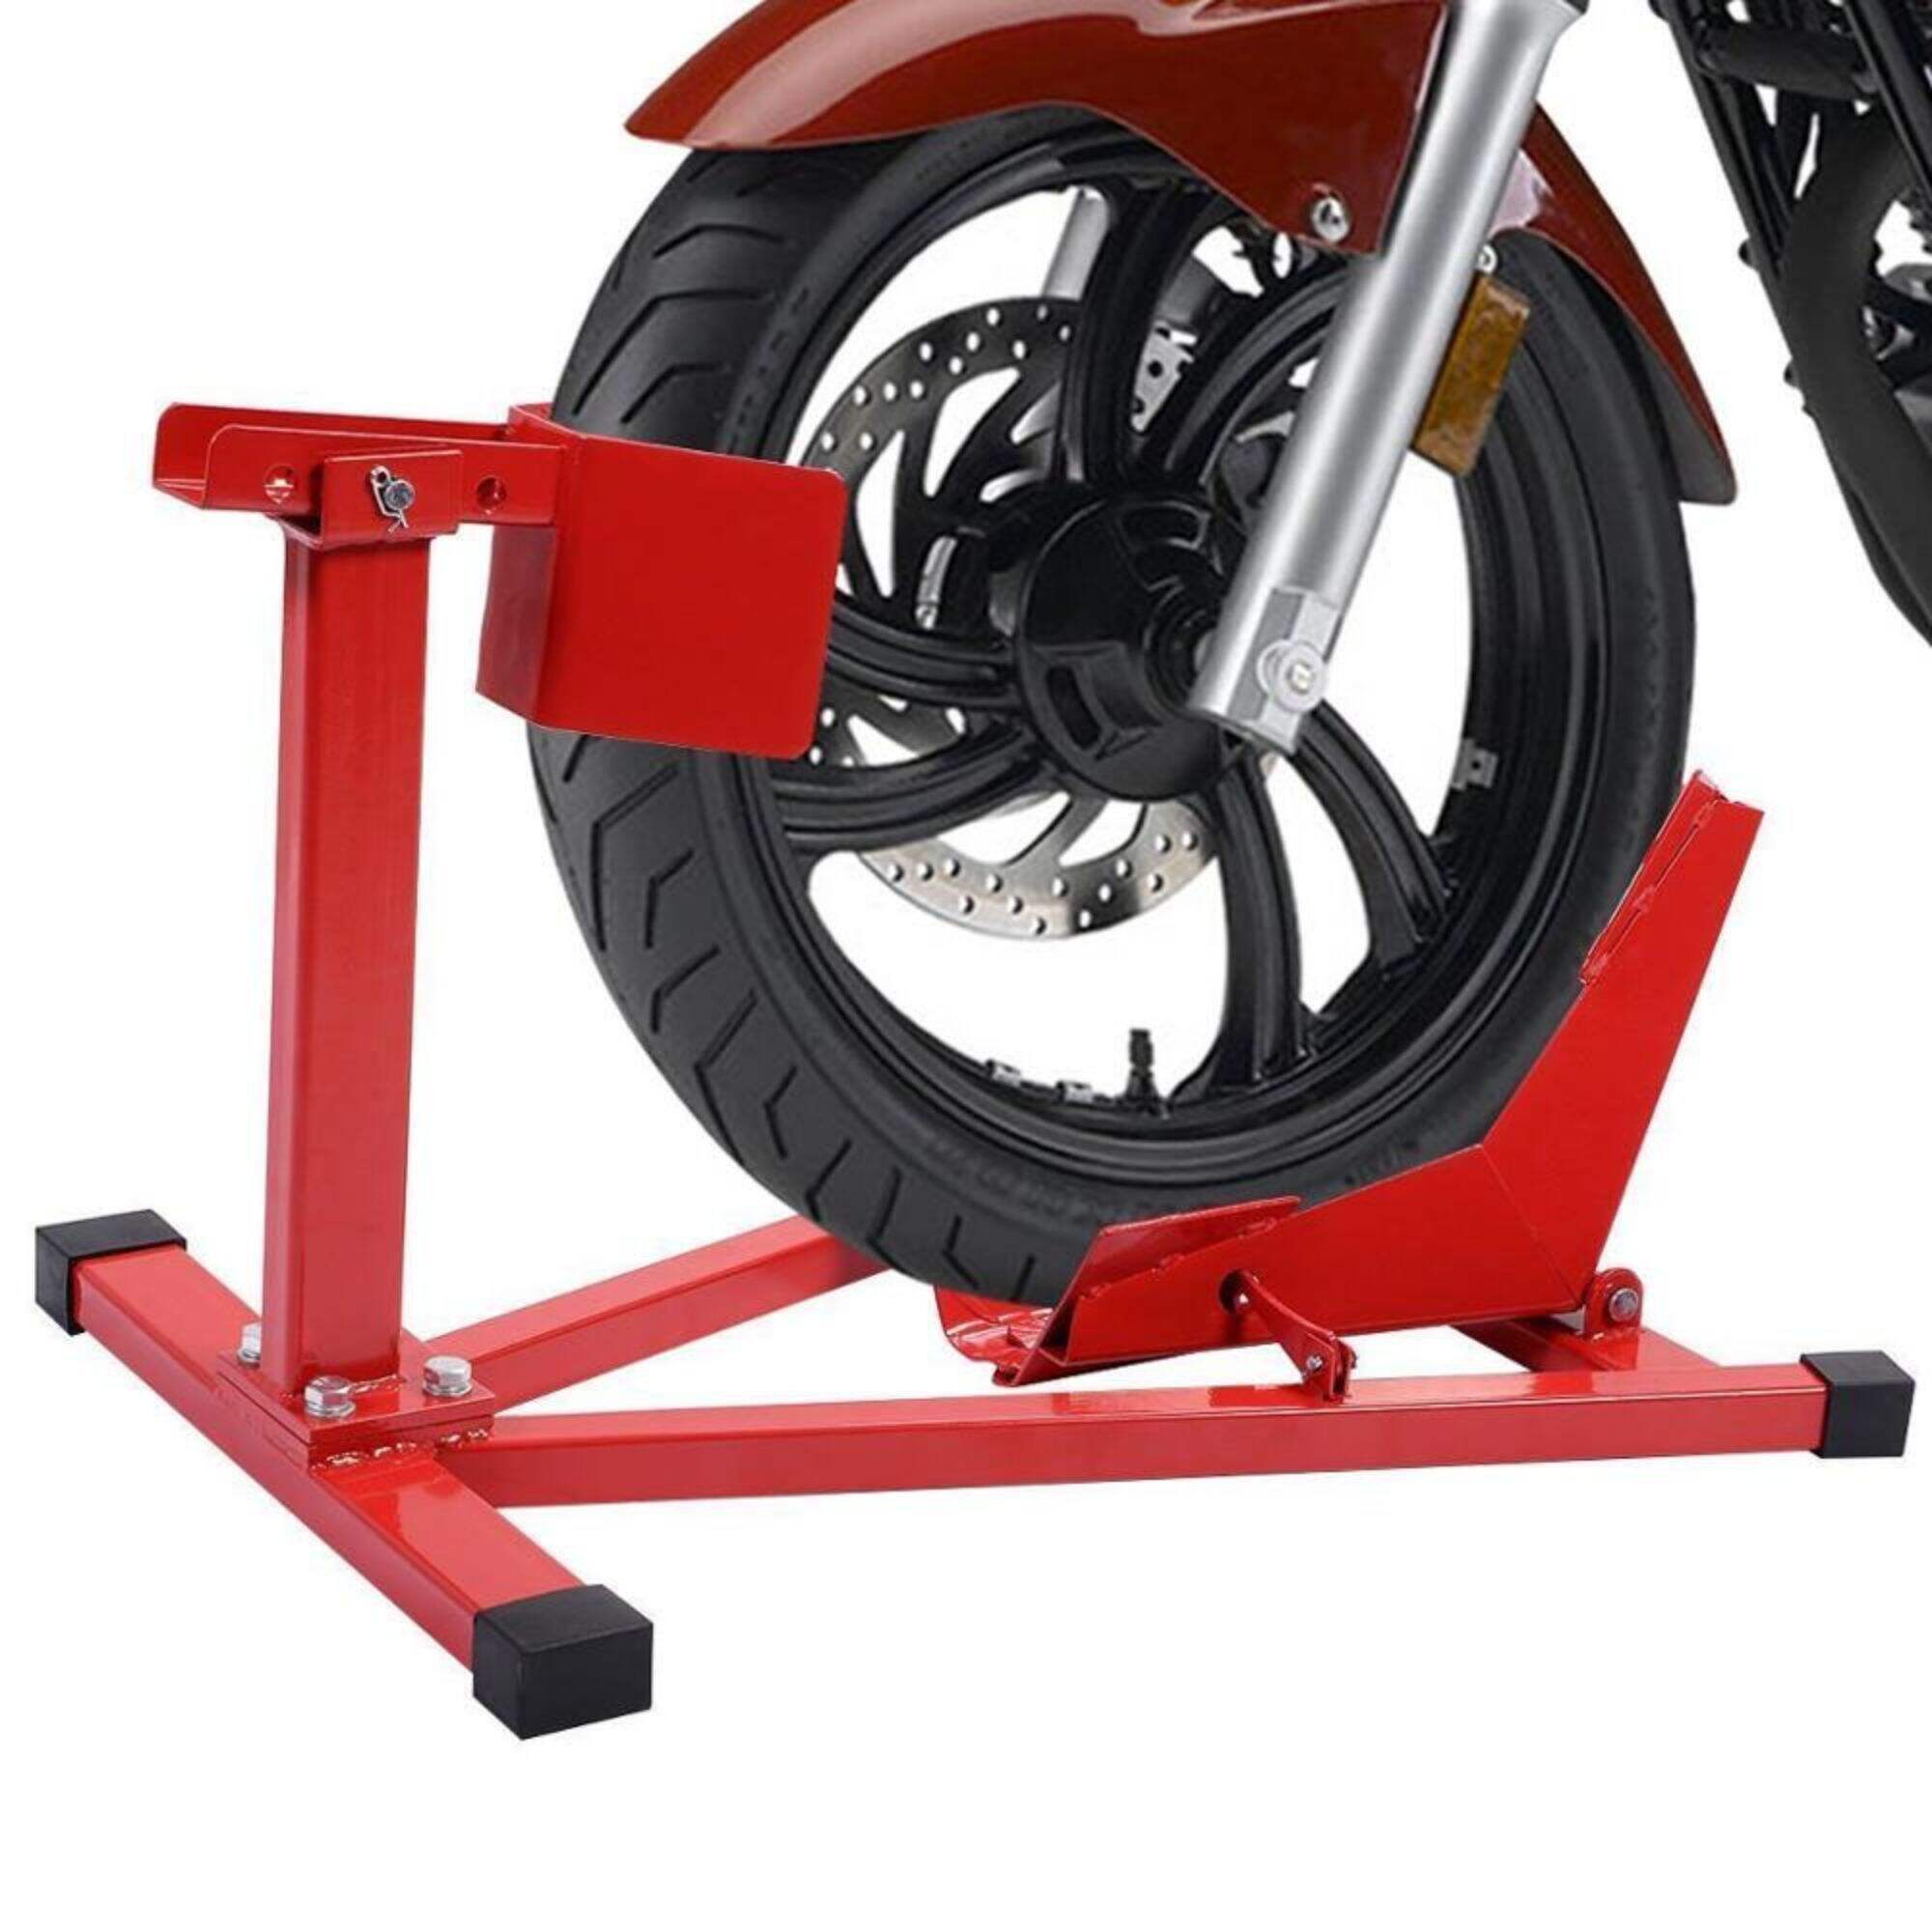 حامل عجلة دراجة نارية قابل للتعديل، حامل داعم لعجلة الدراجة النارية من الفولاذ، لـ 15